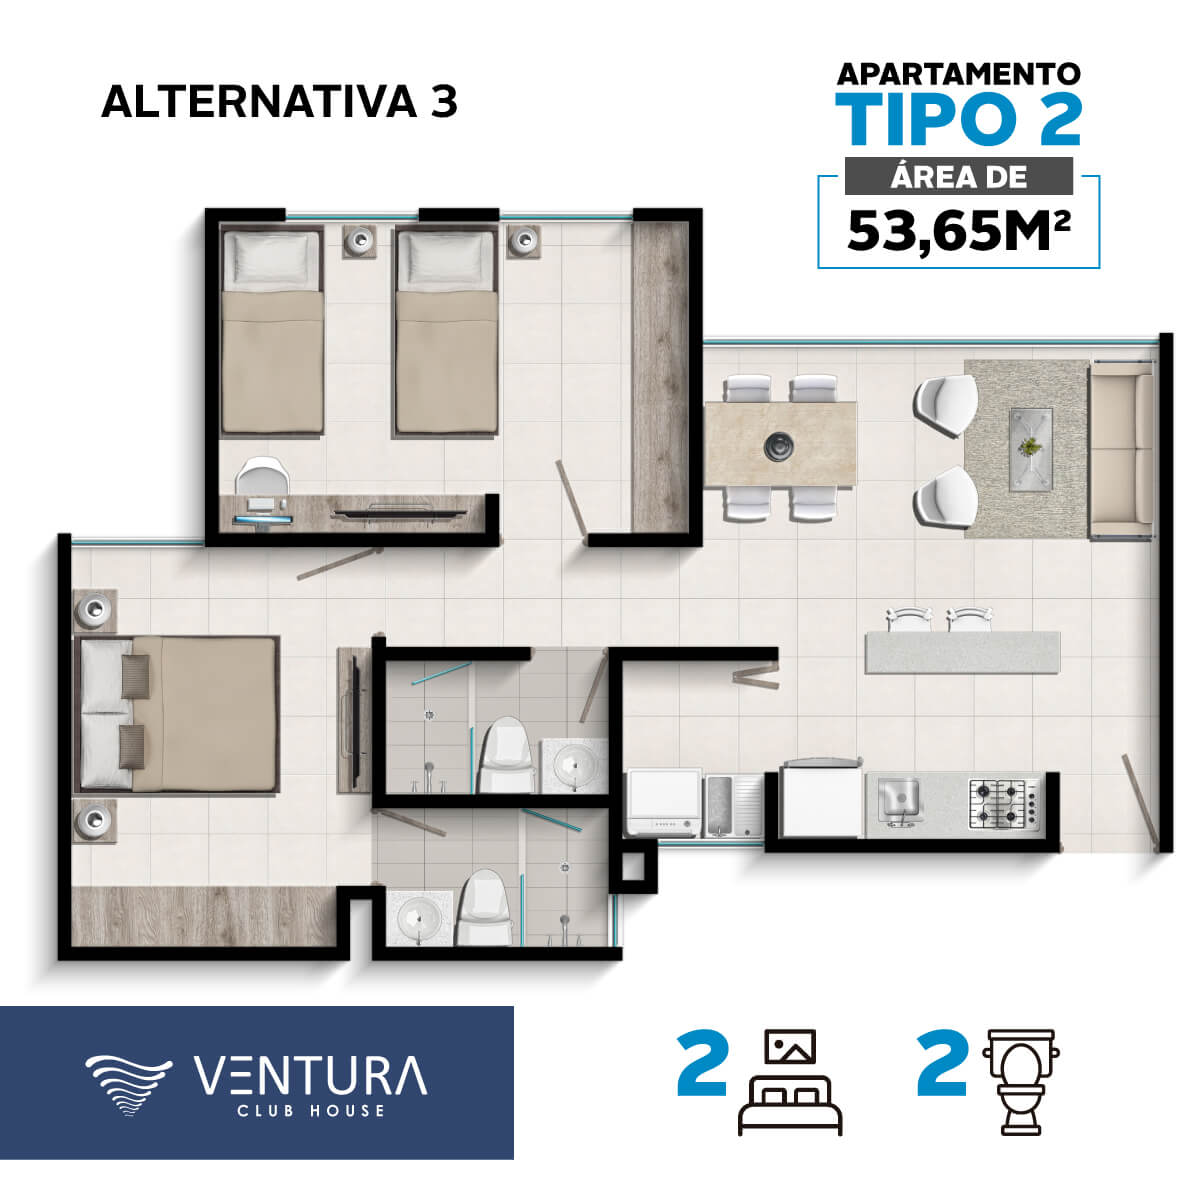 Tipos-Aptos-Ventura-apartamento-tipo2-alternativa3-cyu-colombia